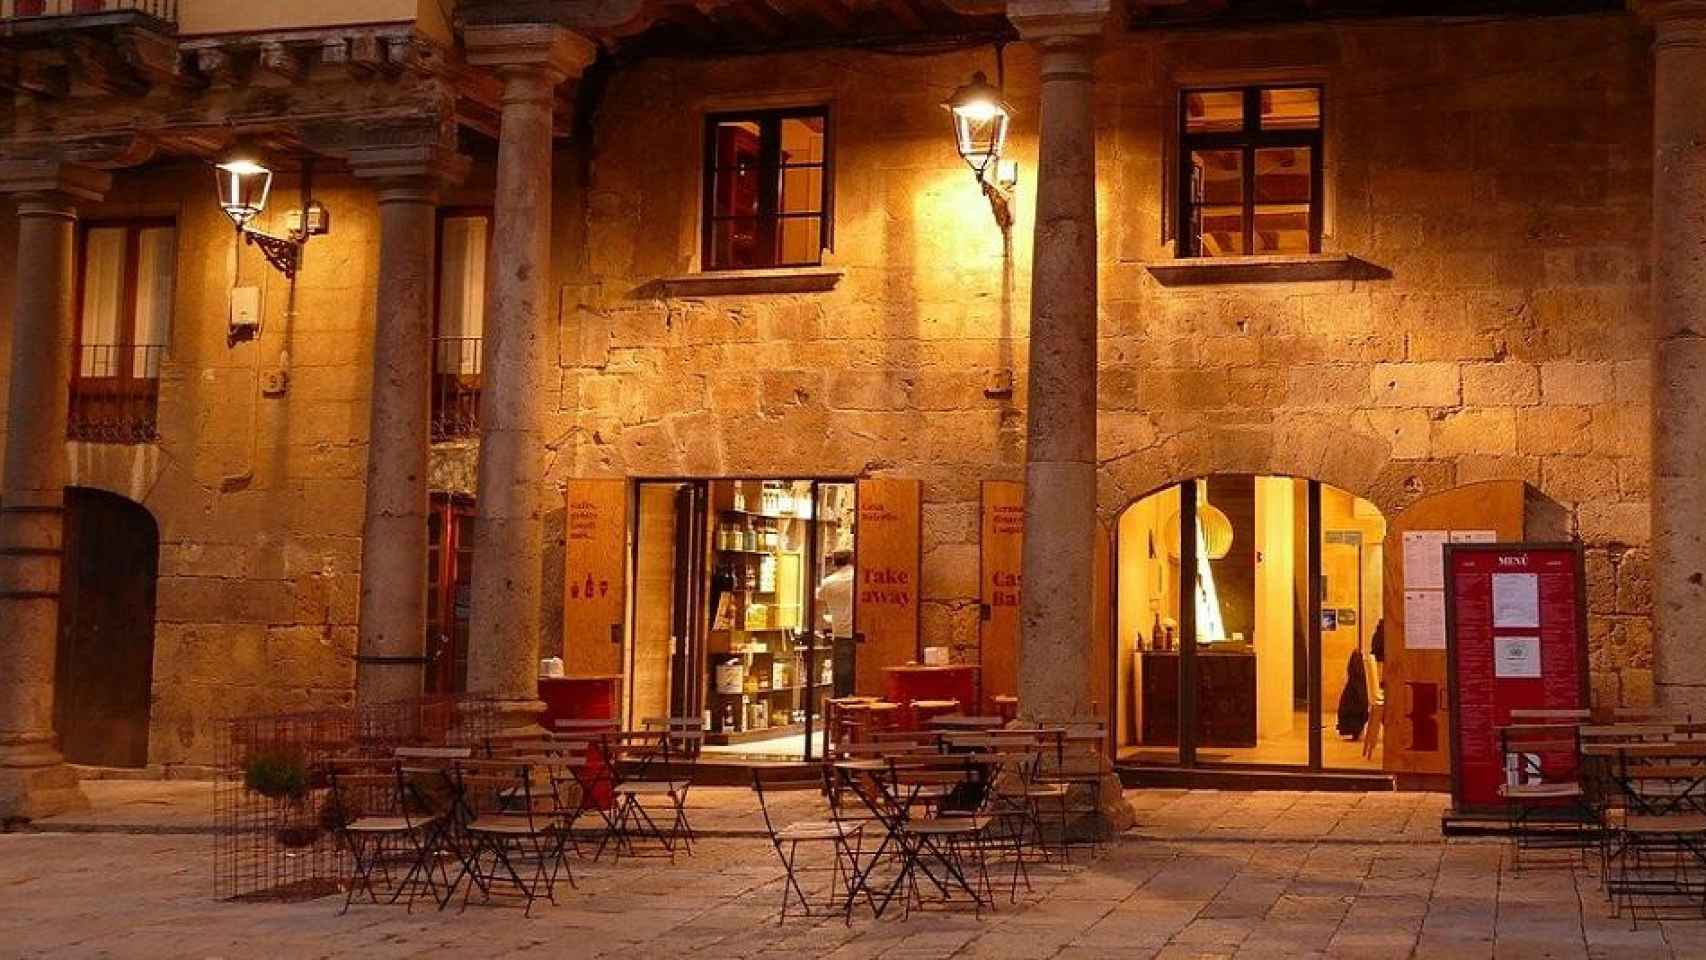 Uno de los restaurantes con terraza en Tarragona / Eveline de Bruin EN PIXABAY